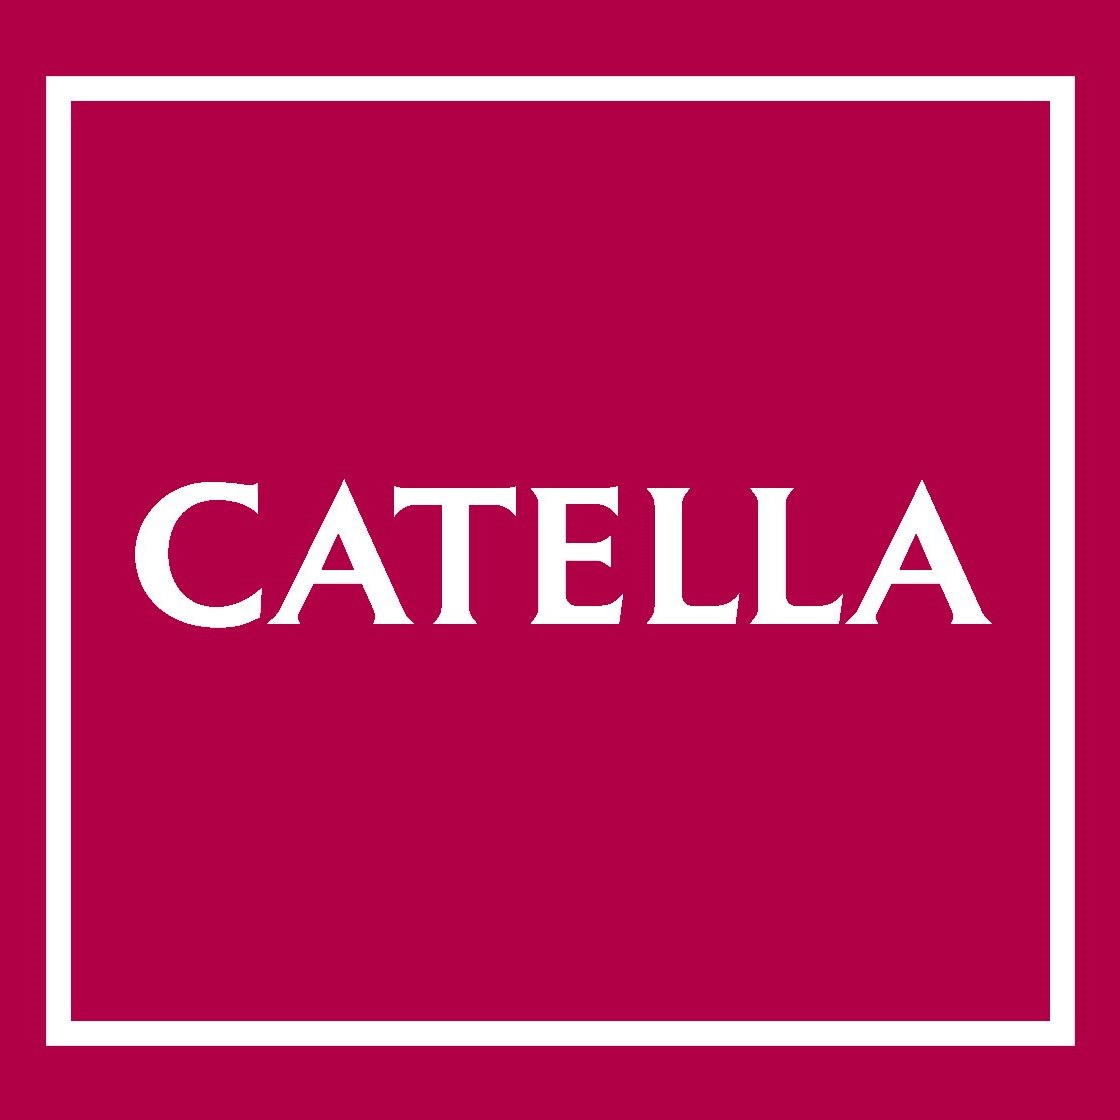 Catella Project Management ist tätig an der Schnittstelle von Kapital- und Immobilienmarkt.